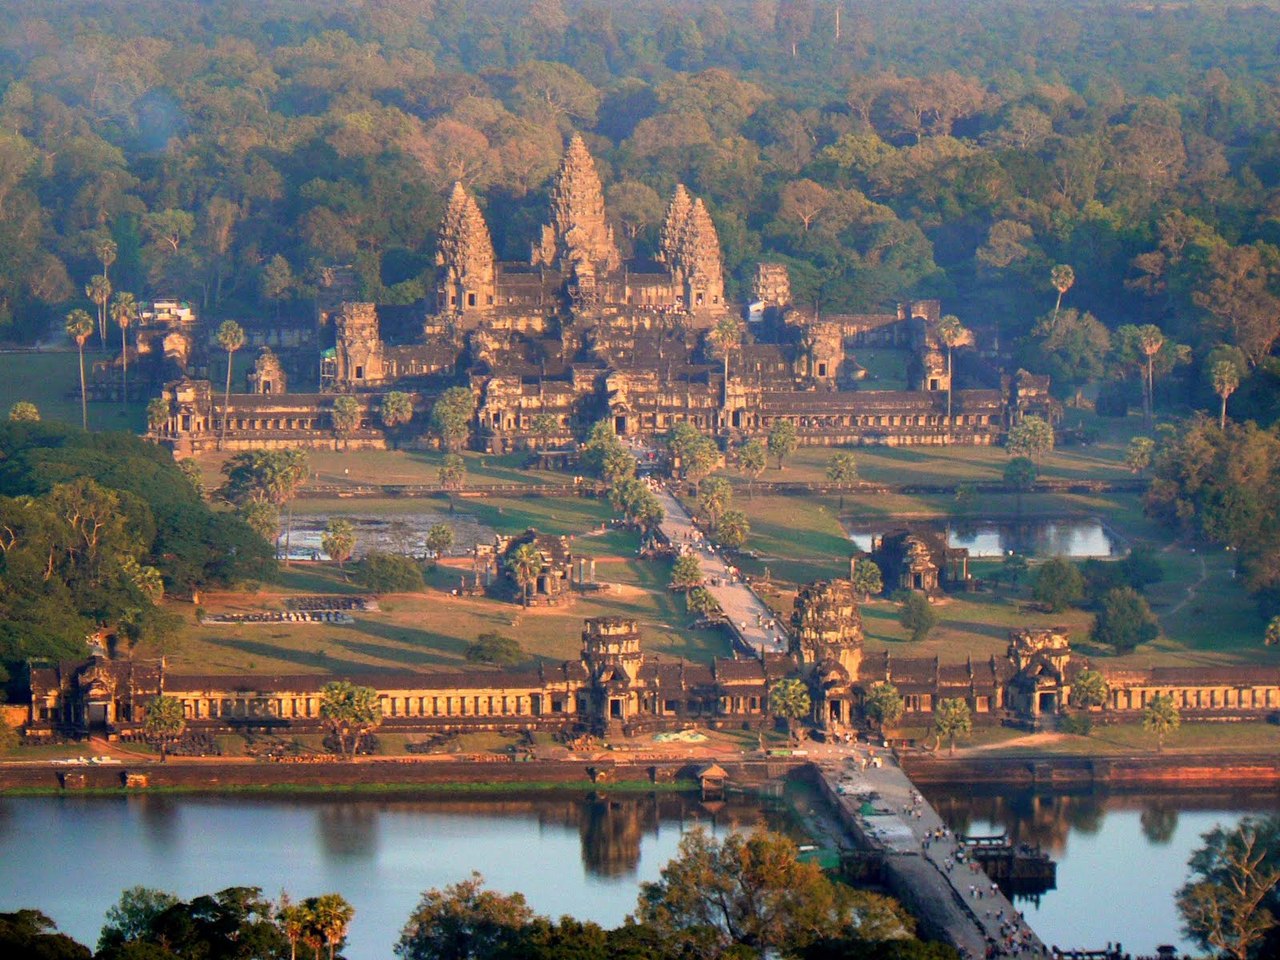  Гигантский храмовый комплекс Ангкор-Ват, Камбоджа